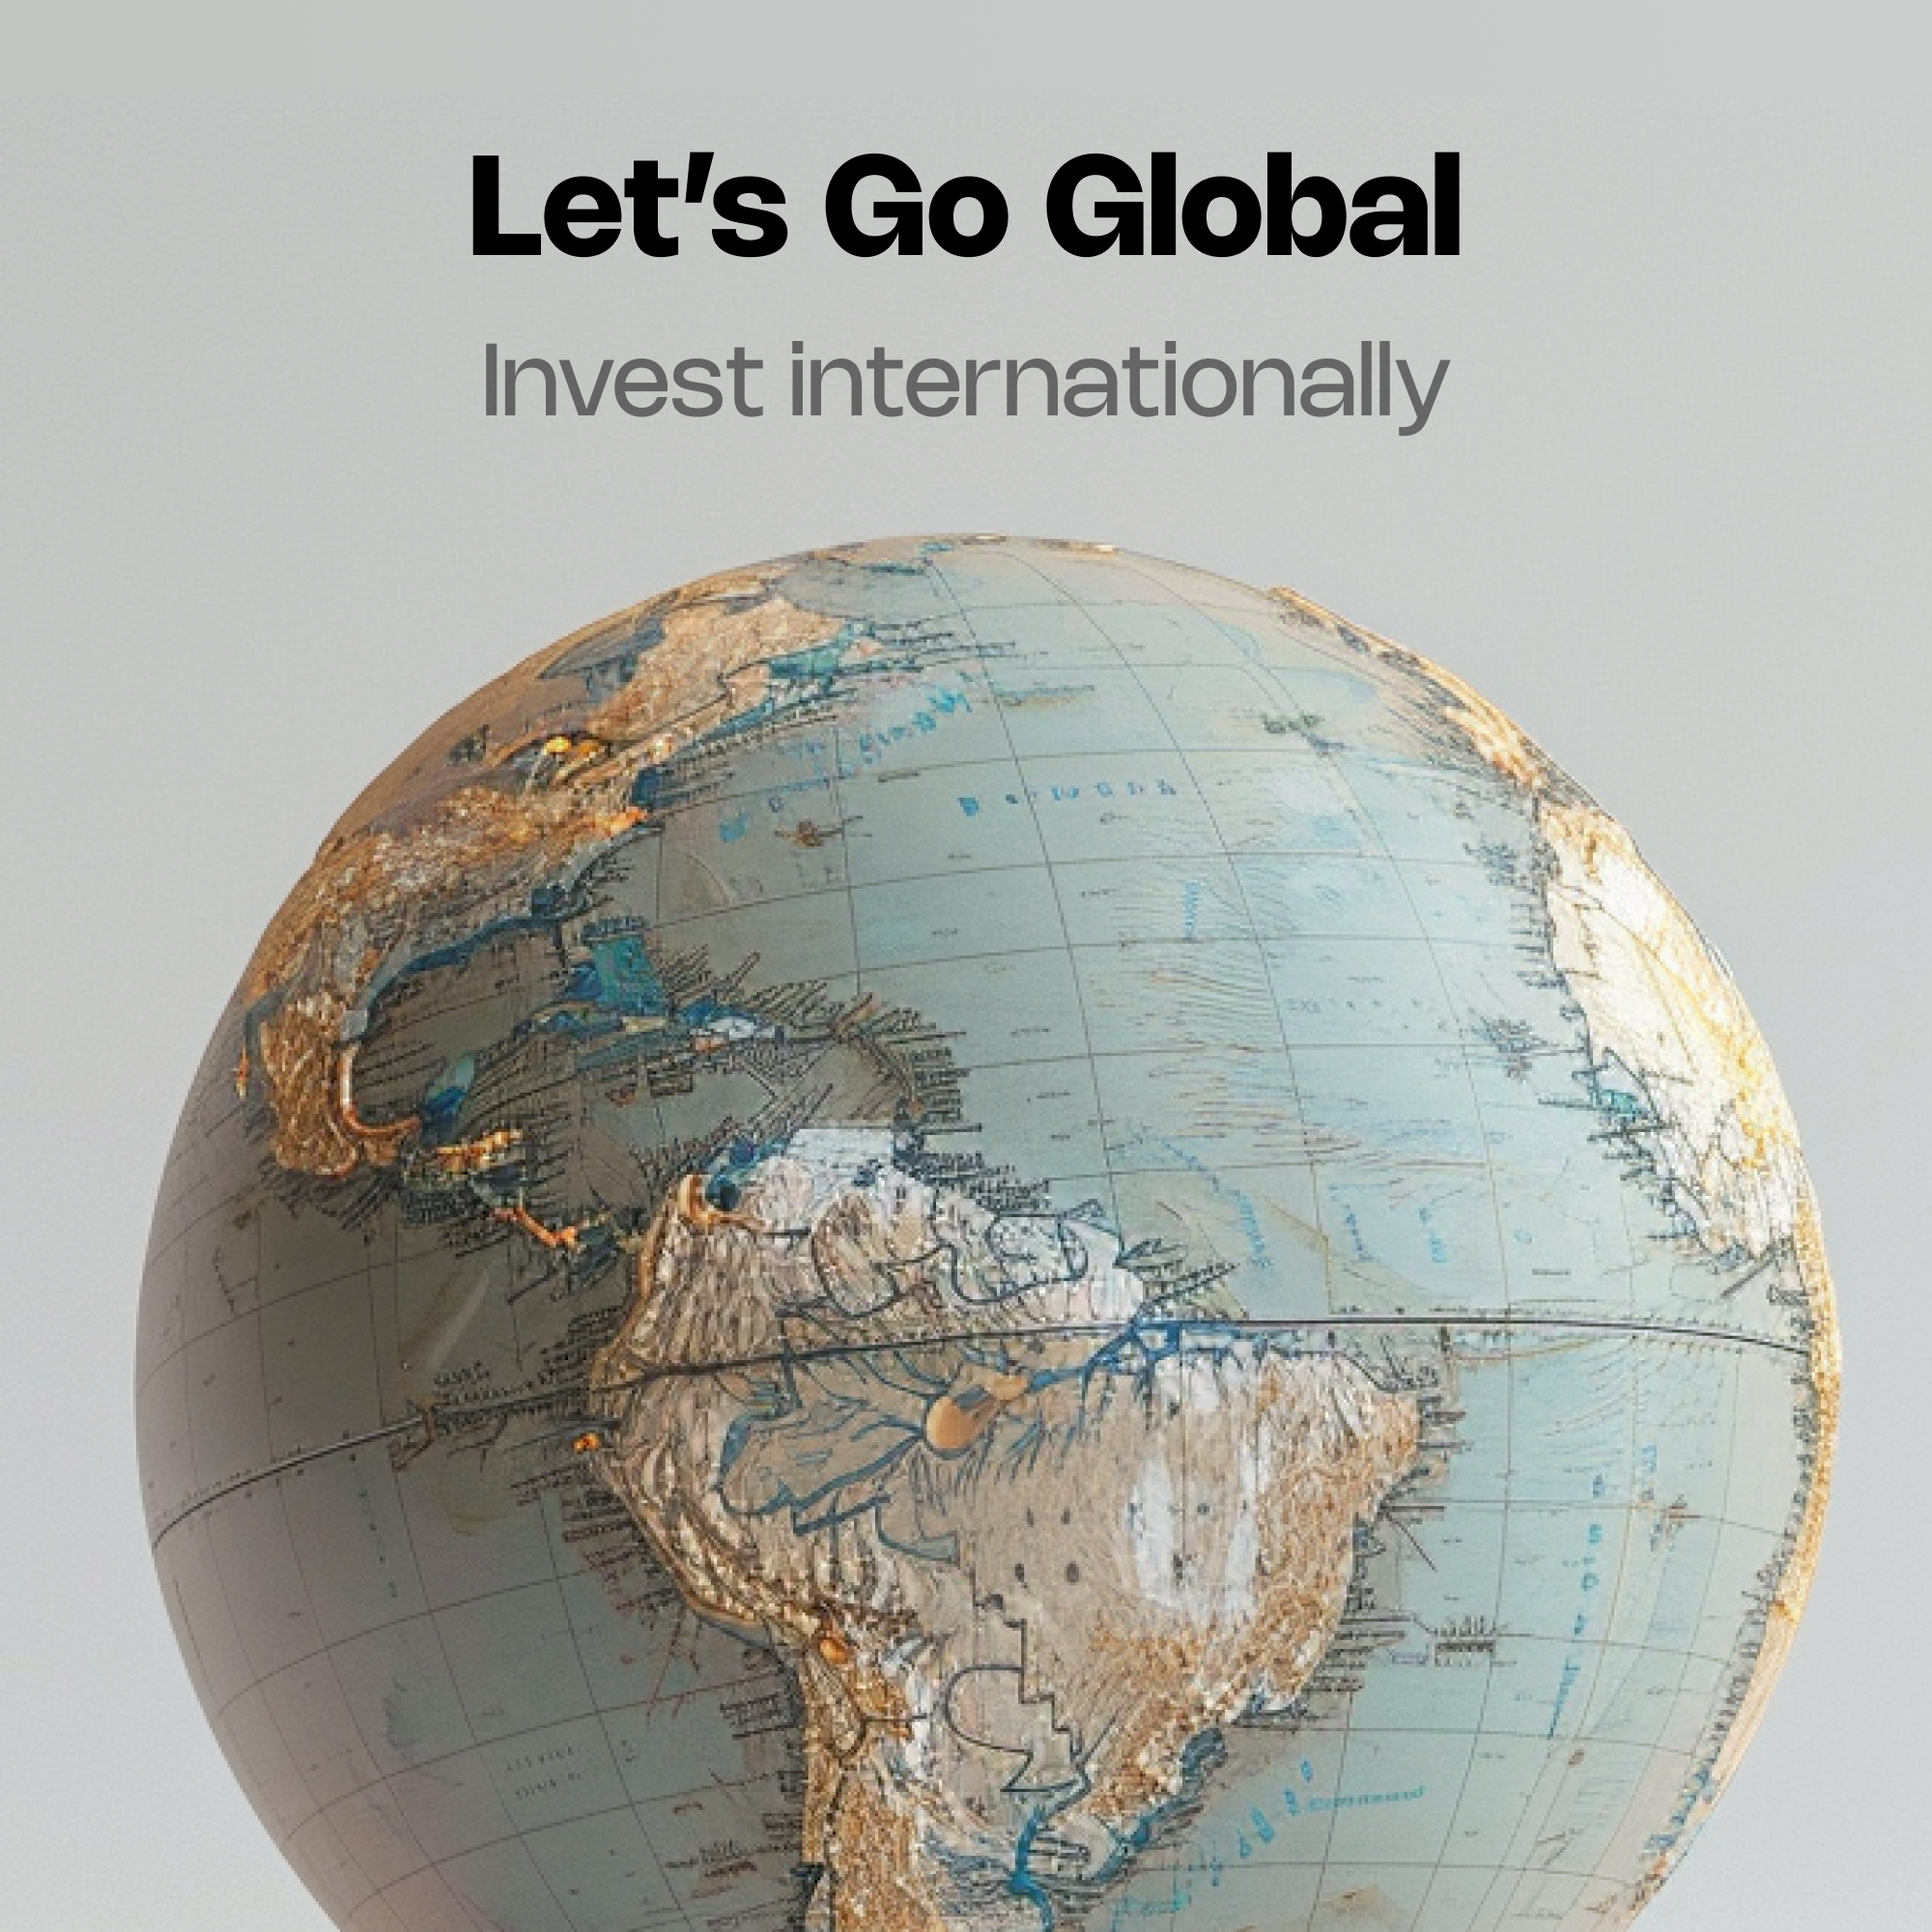 Let's Go Global: Invest internationally